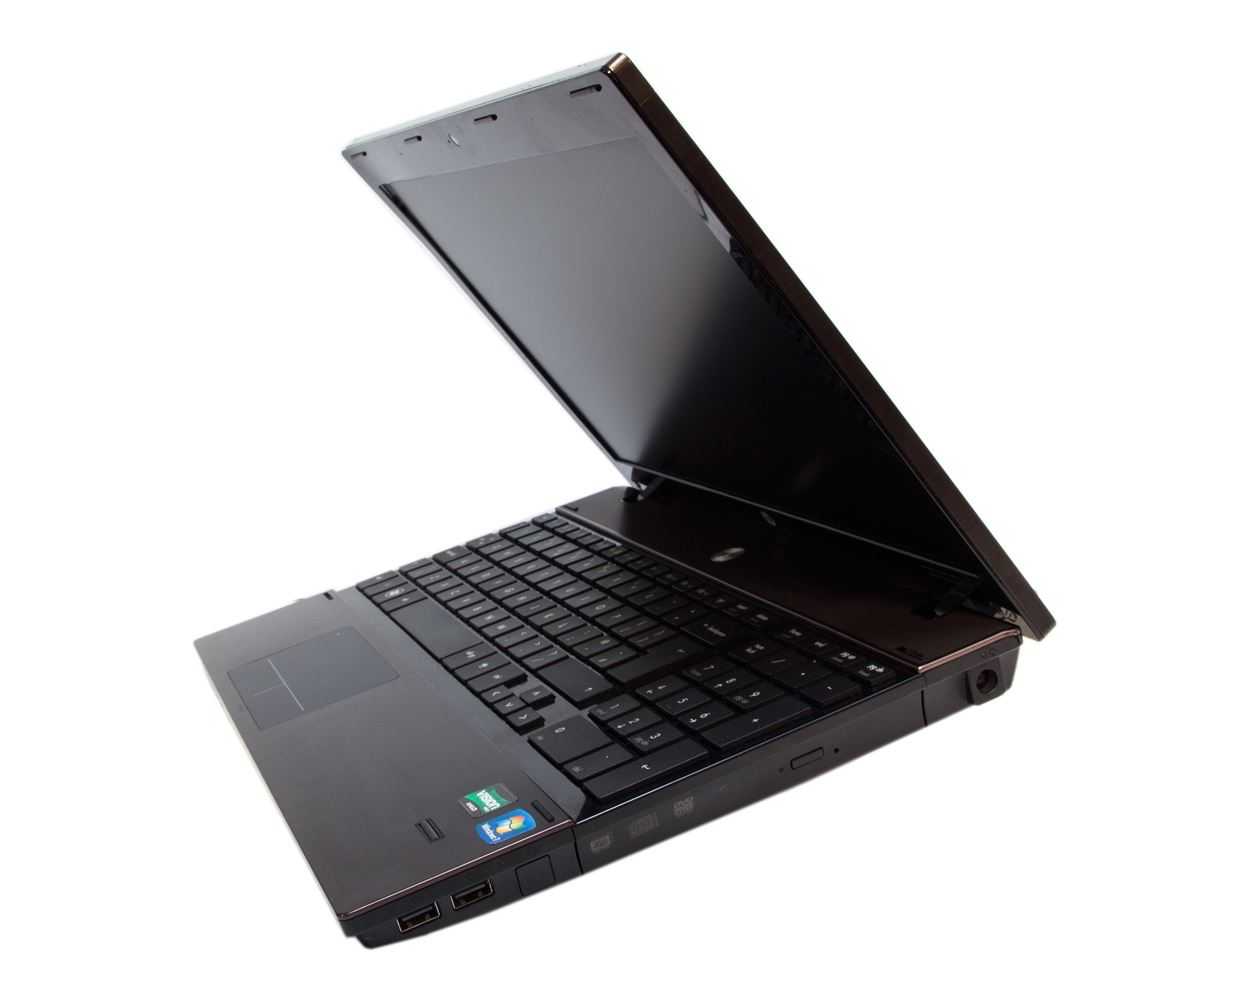 Ноутбук hp probook hp 4525s — купить, цена и характеристики, отзывы